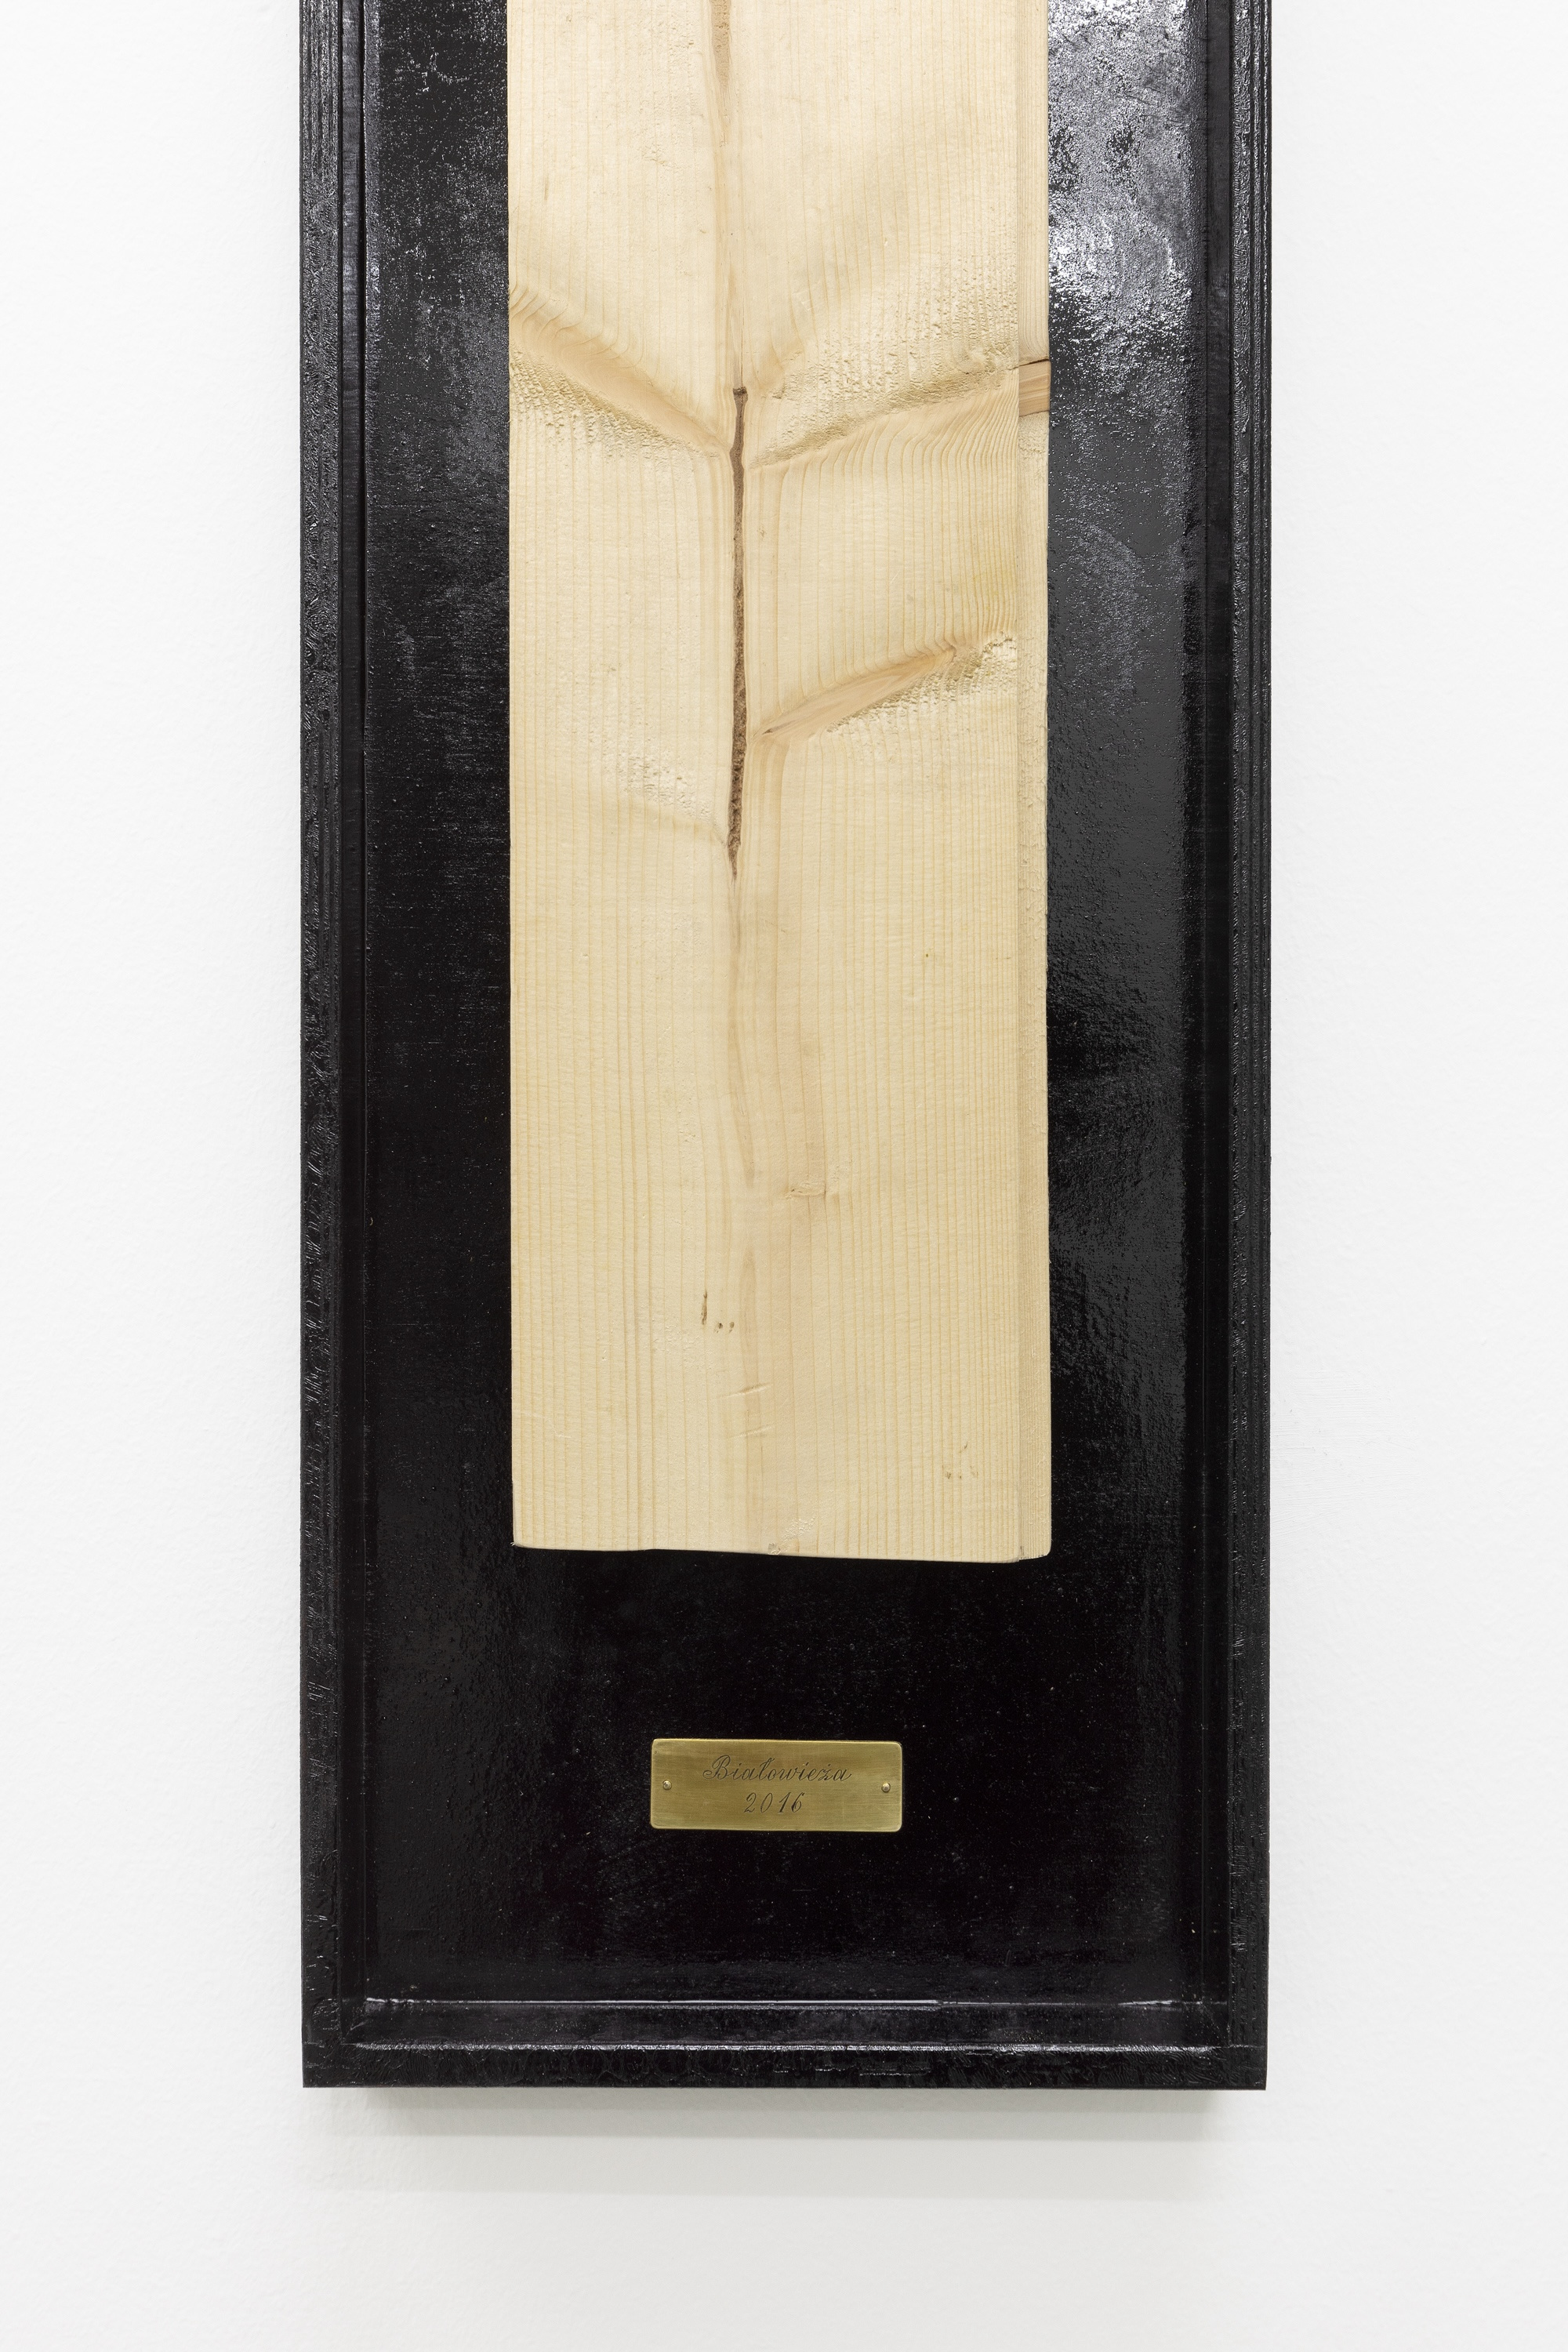 Kinga Kiełczyńska, Understory 03 (detail), 2016/2024, spruce wood bitten by bark beetles, plywood, petroleum compound, copper, 167 x 26 x 5 cm 